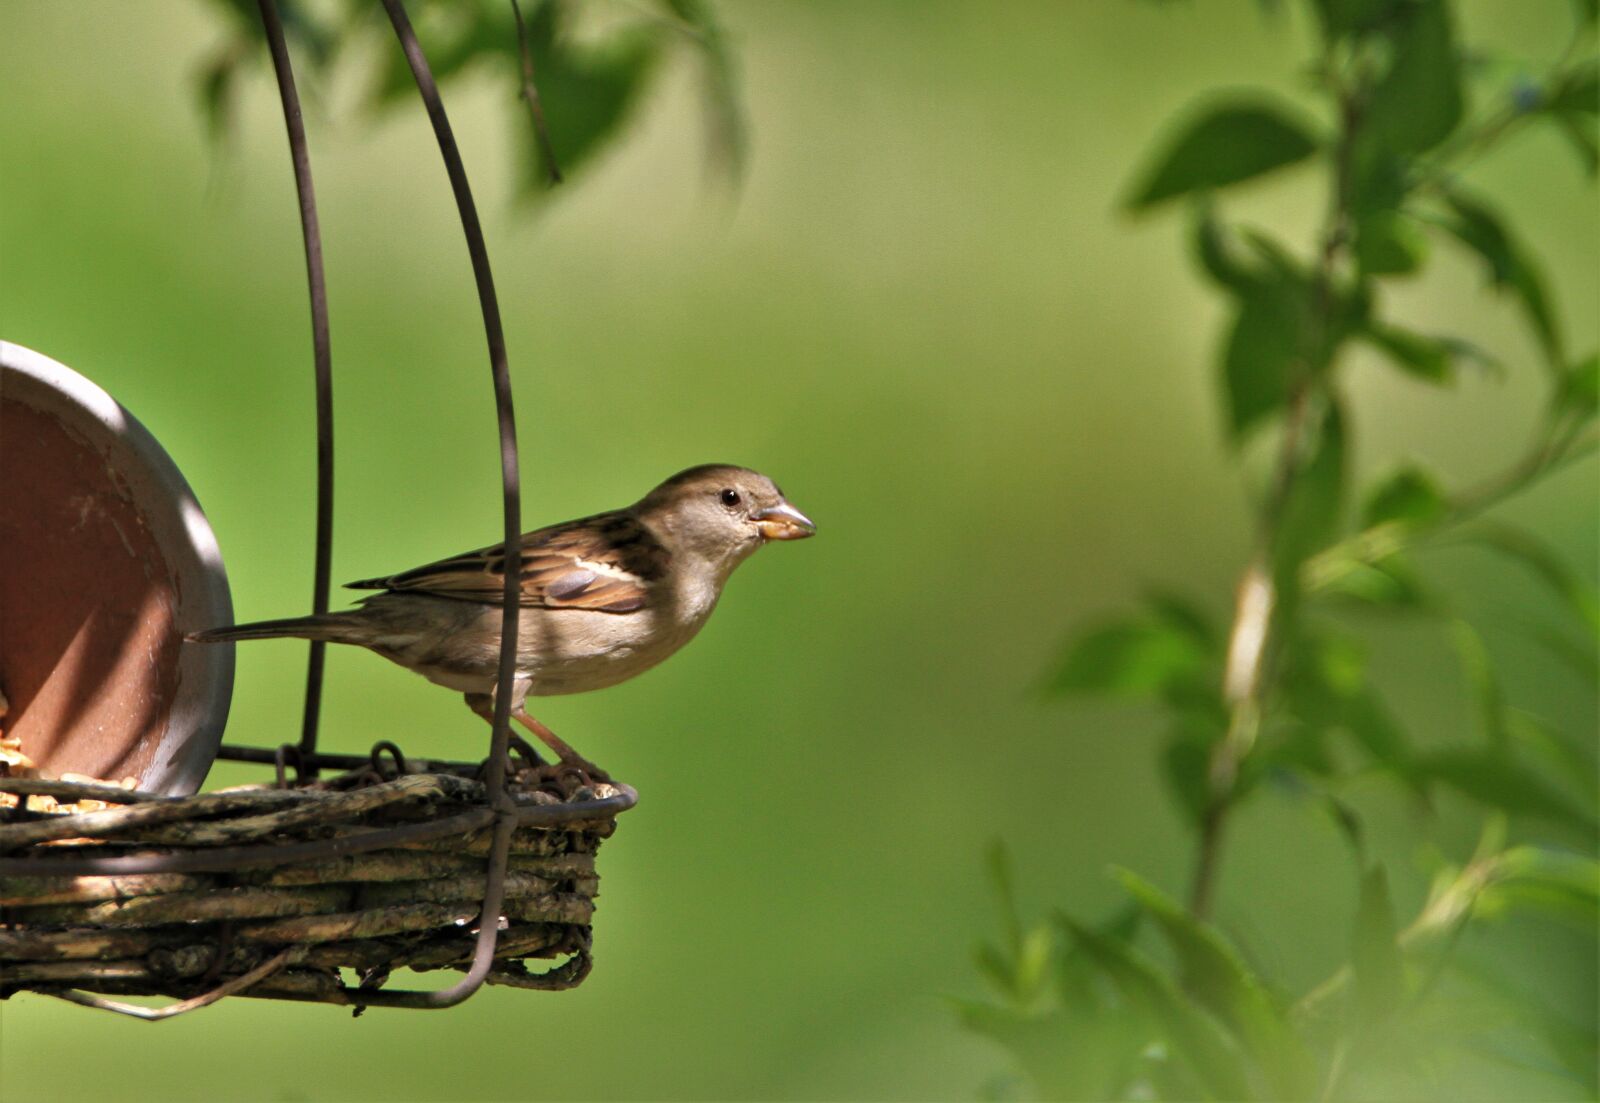 Canon EOS 7D sample photo. Sparrow, songbird, bird photography